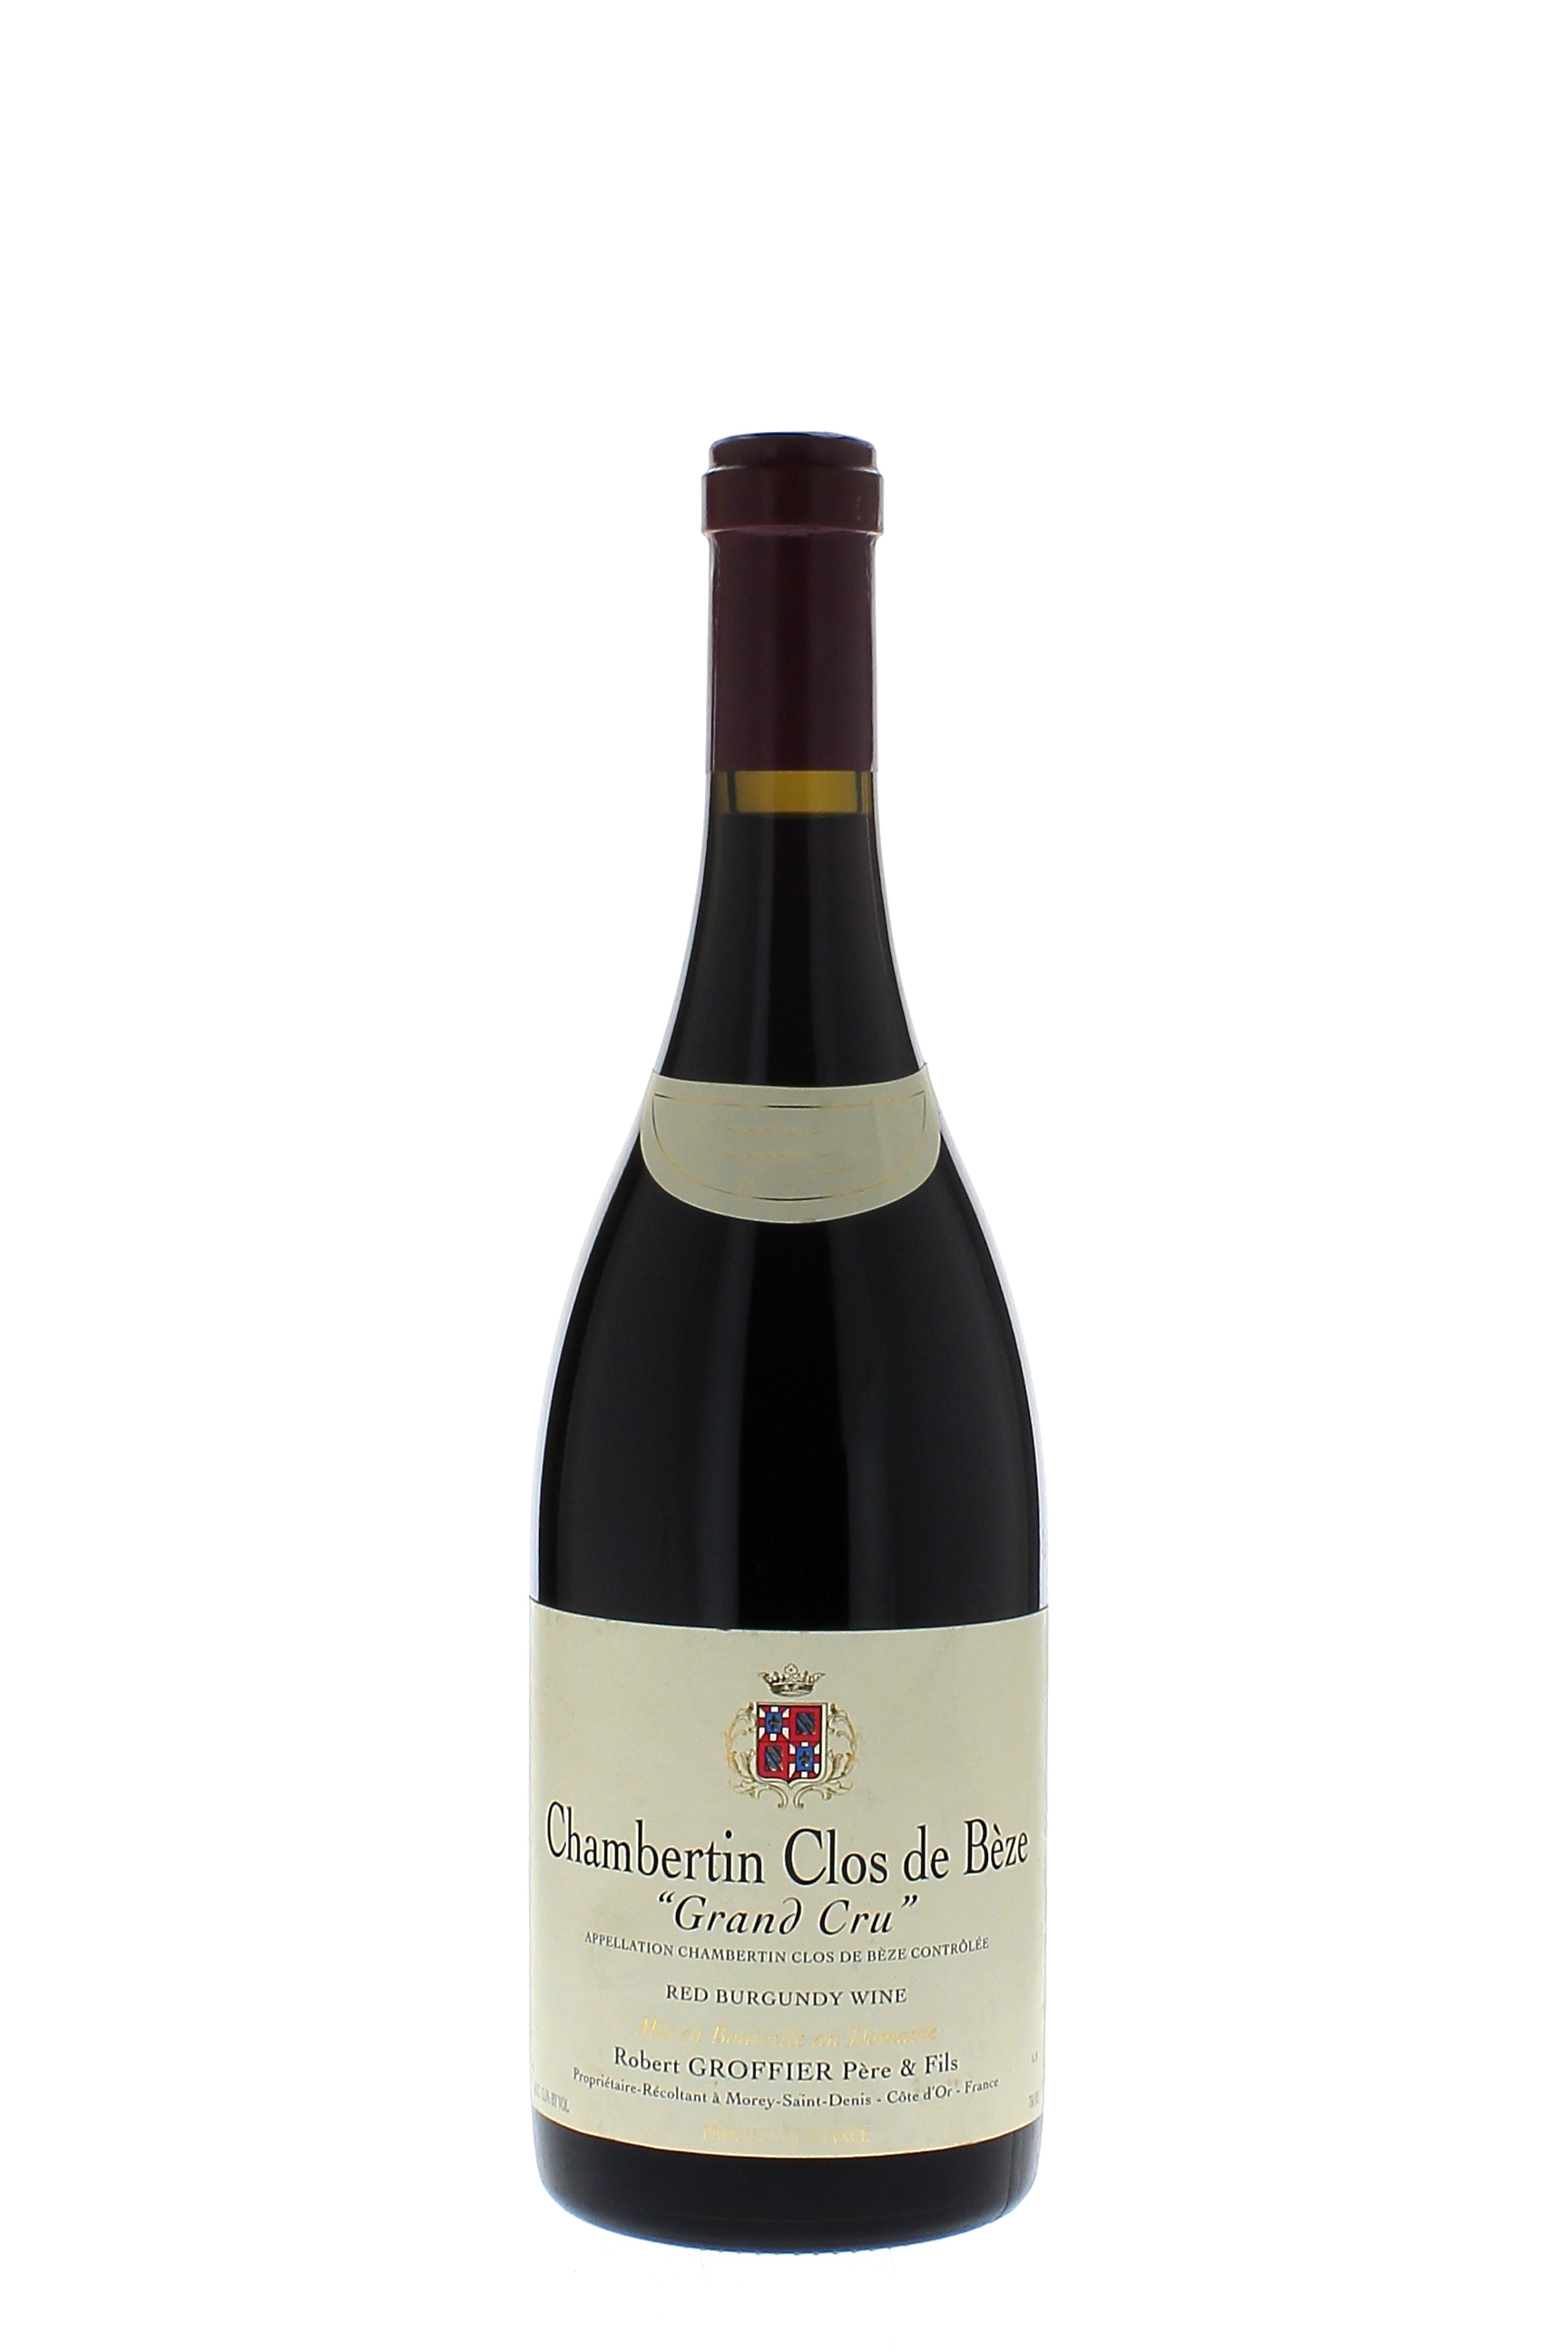 Chambertin clos de beze grand cru 2013  GROFFIER Robert, Bourgogne rouge